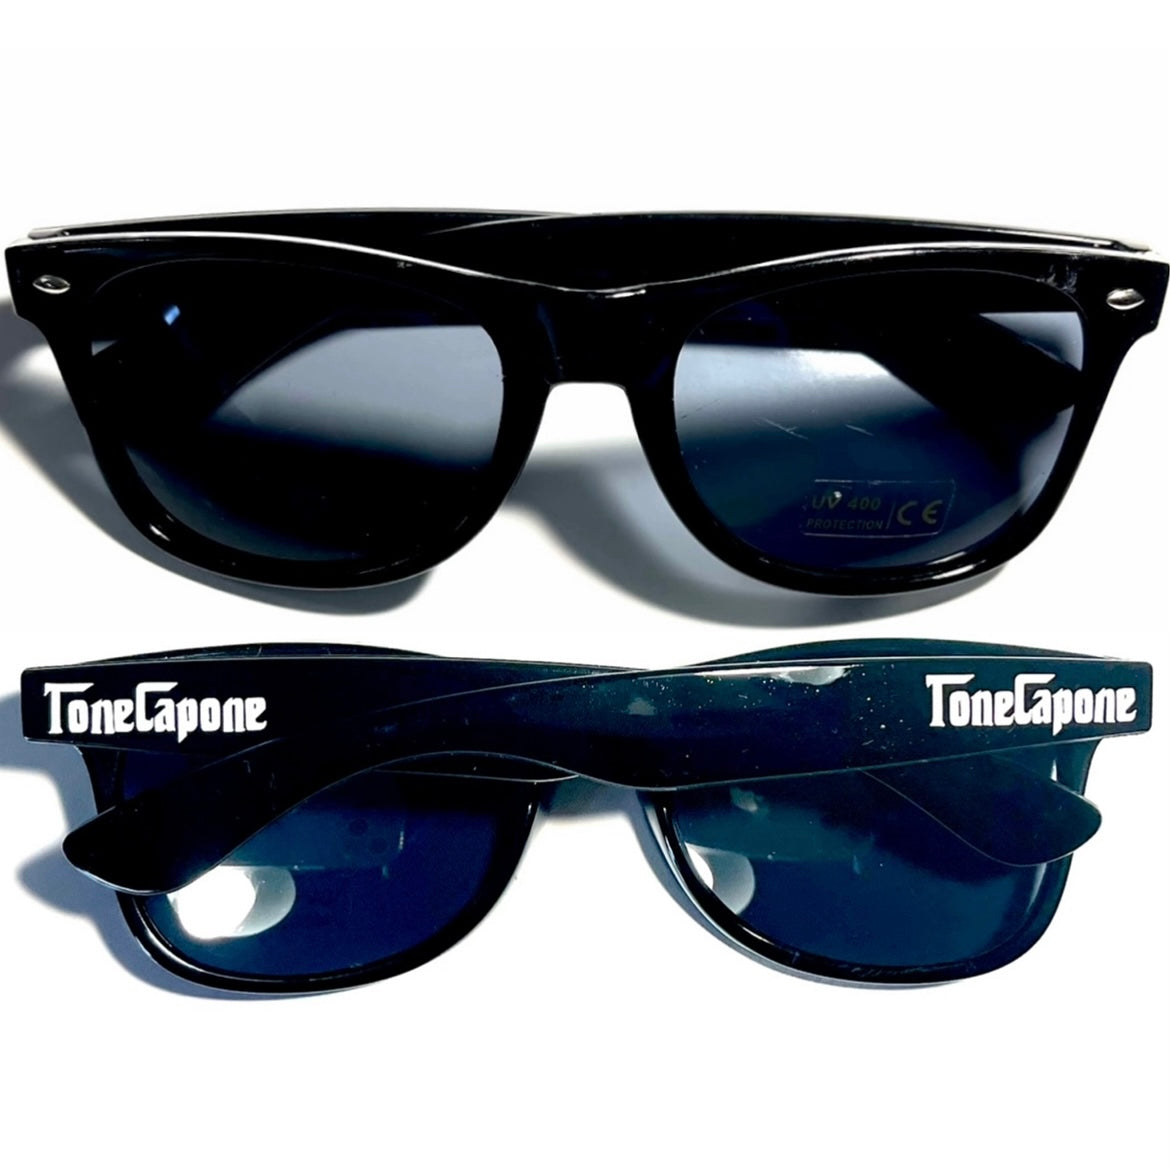 Tone Capone Sunglasses